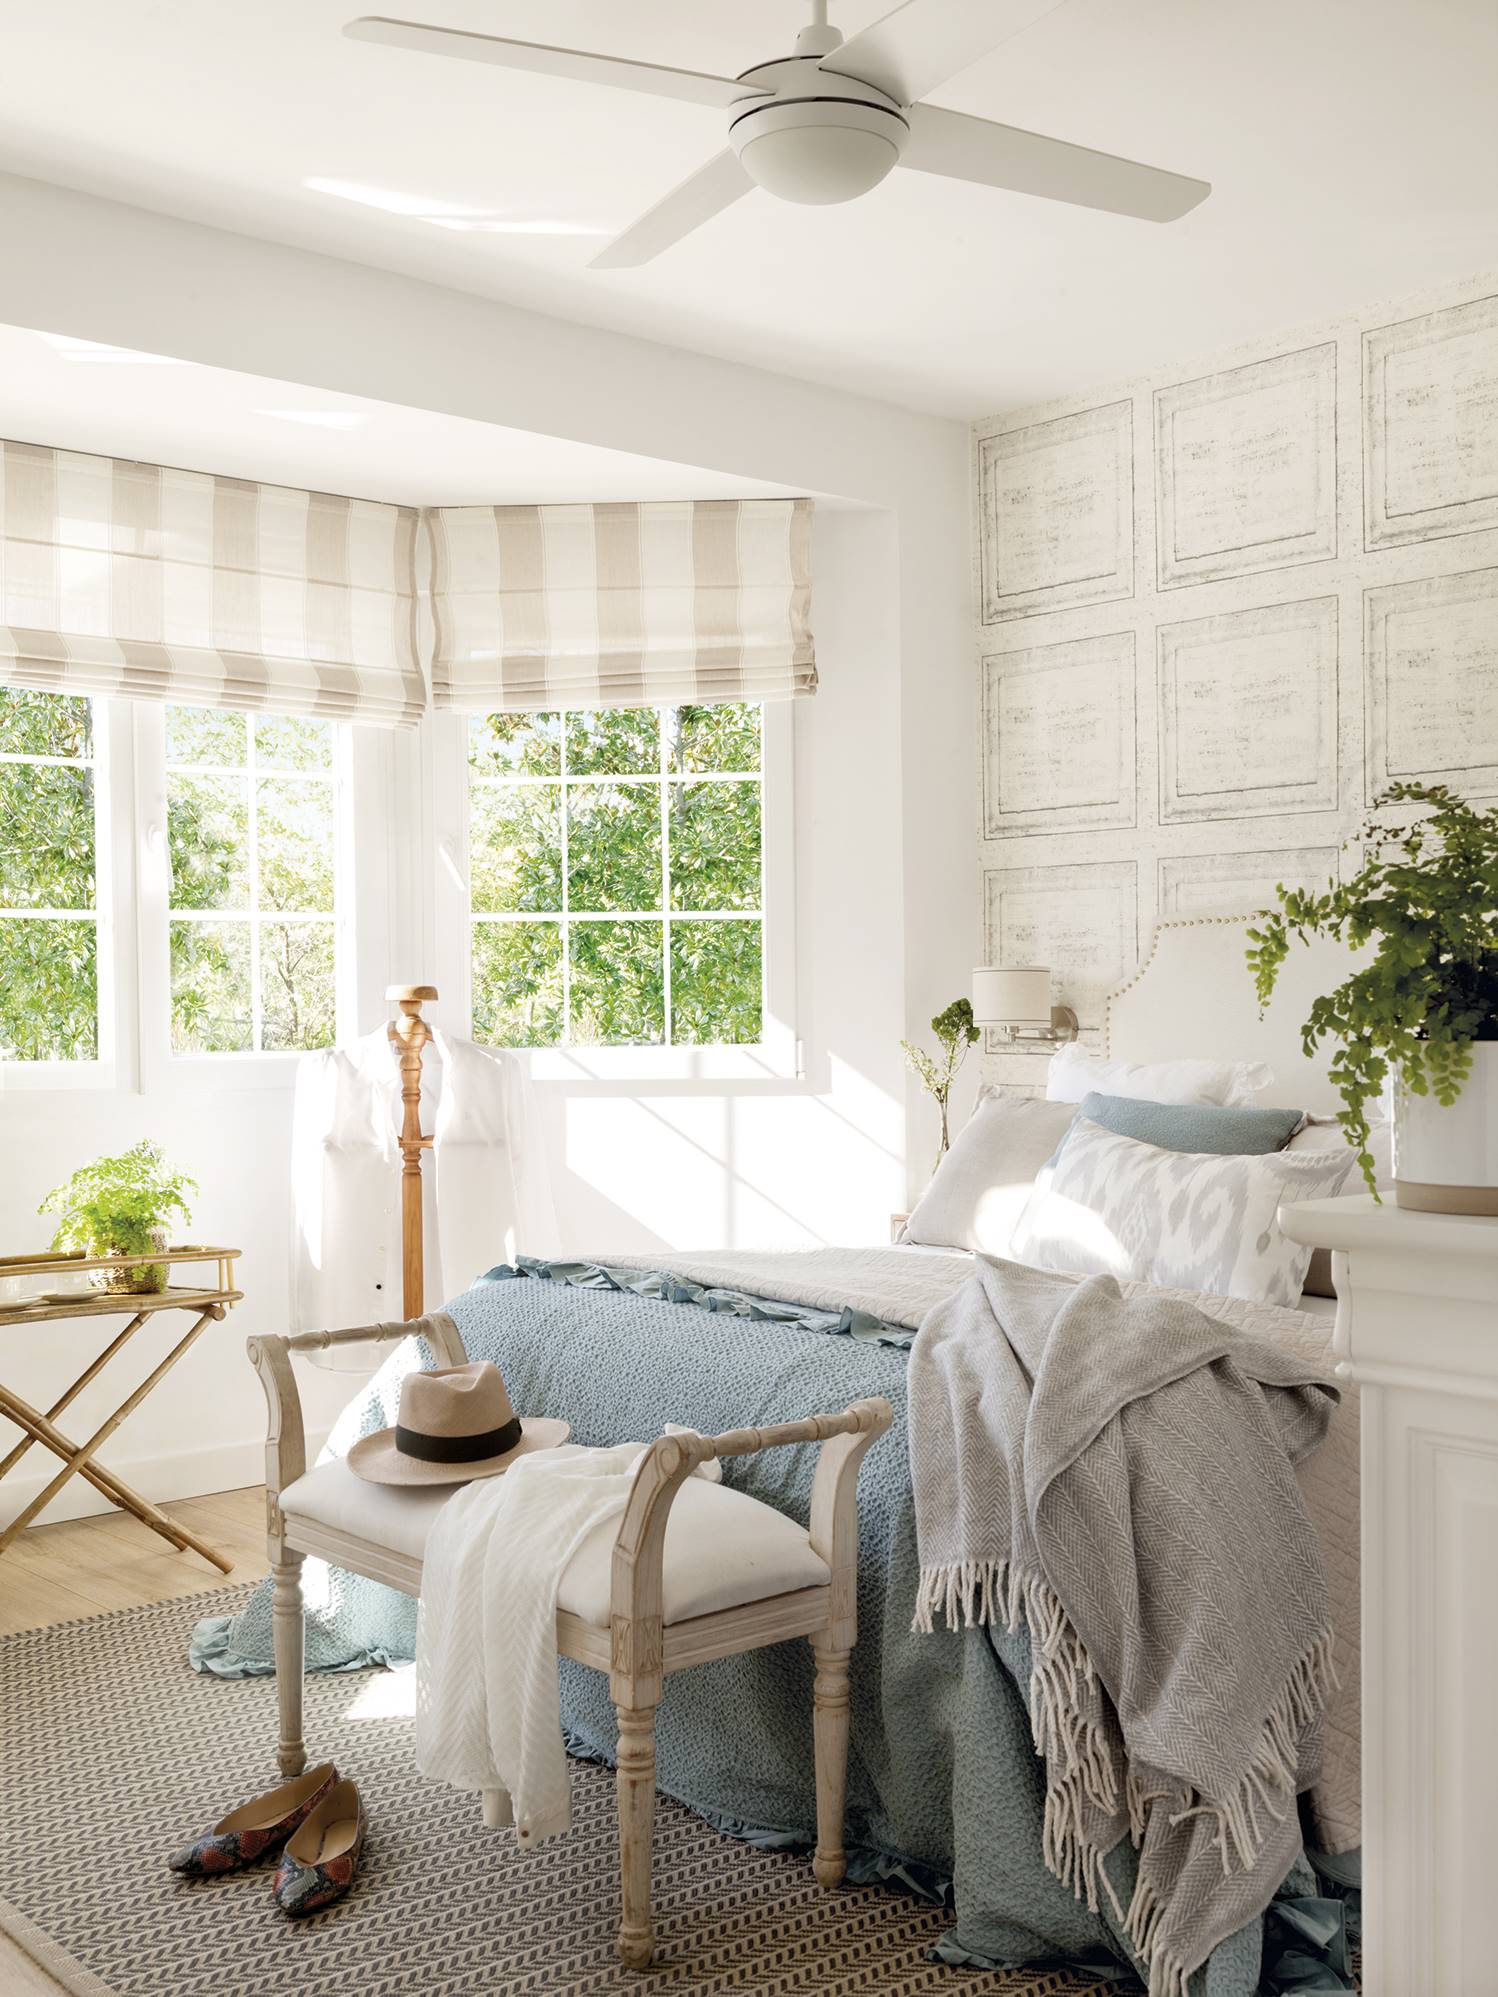 Dormitorio principal con papel pintado, ventilador y banco a los pies de la cama.